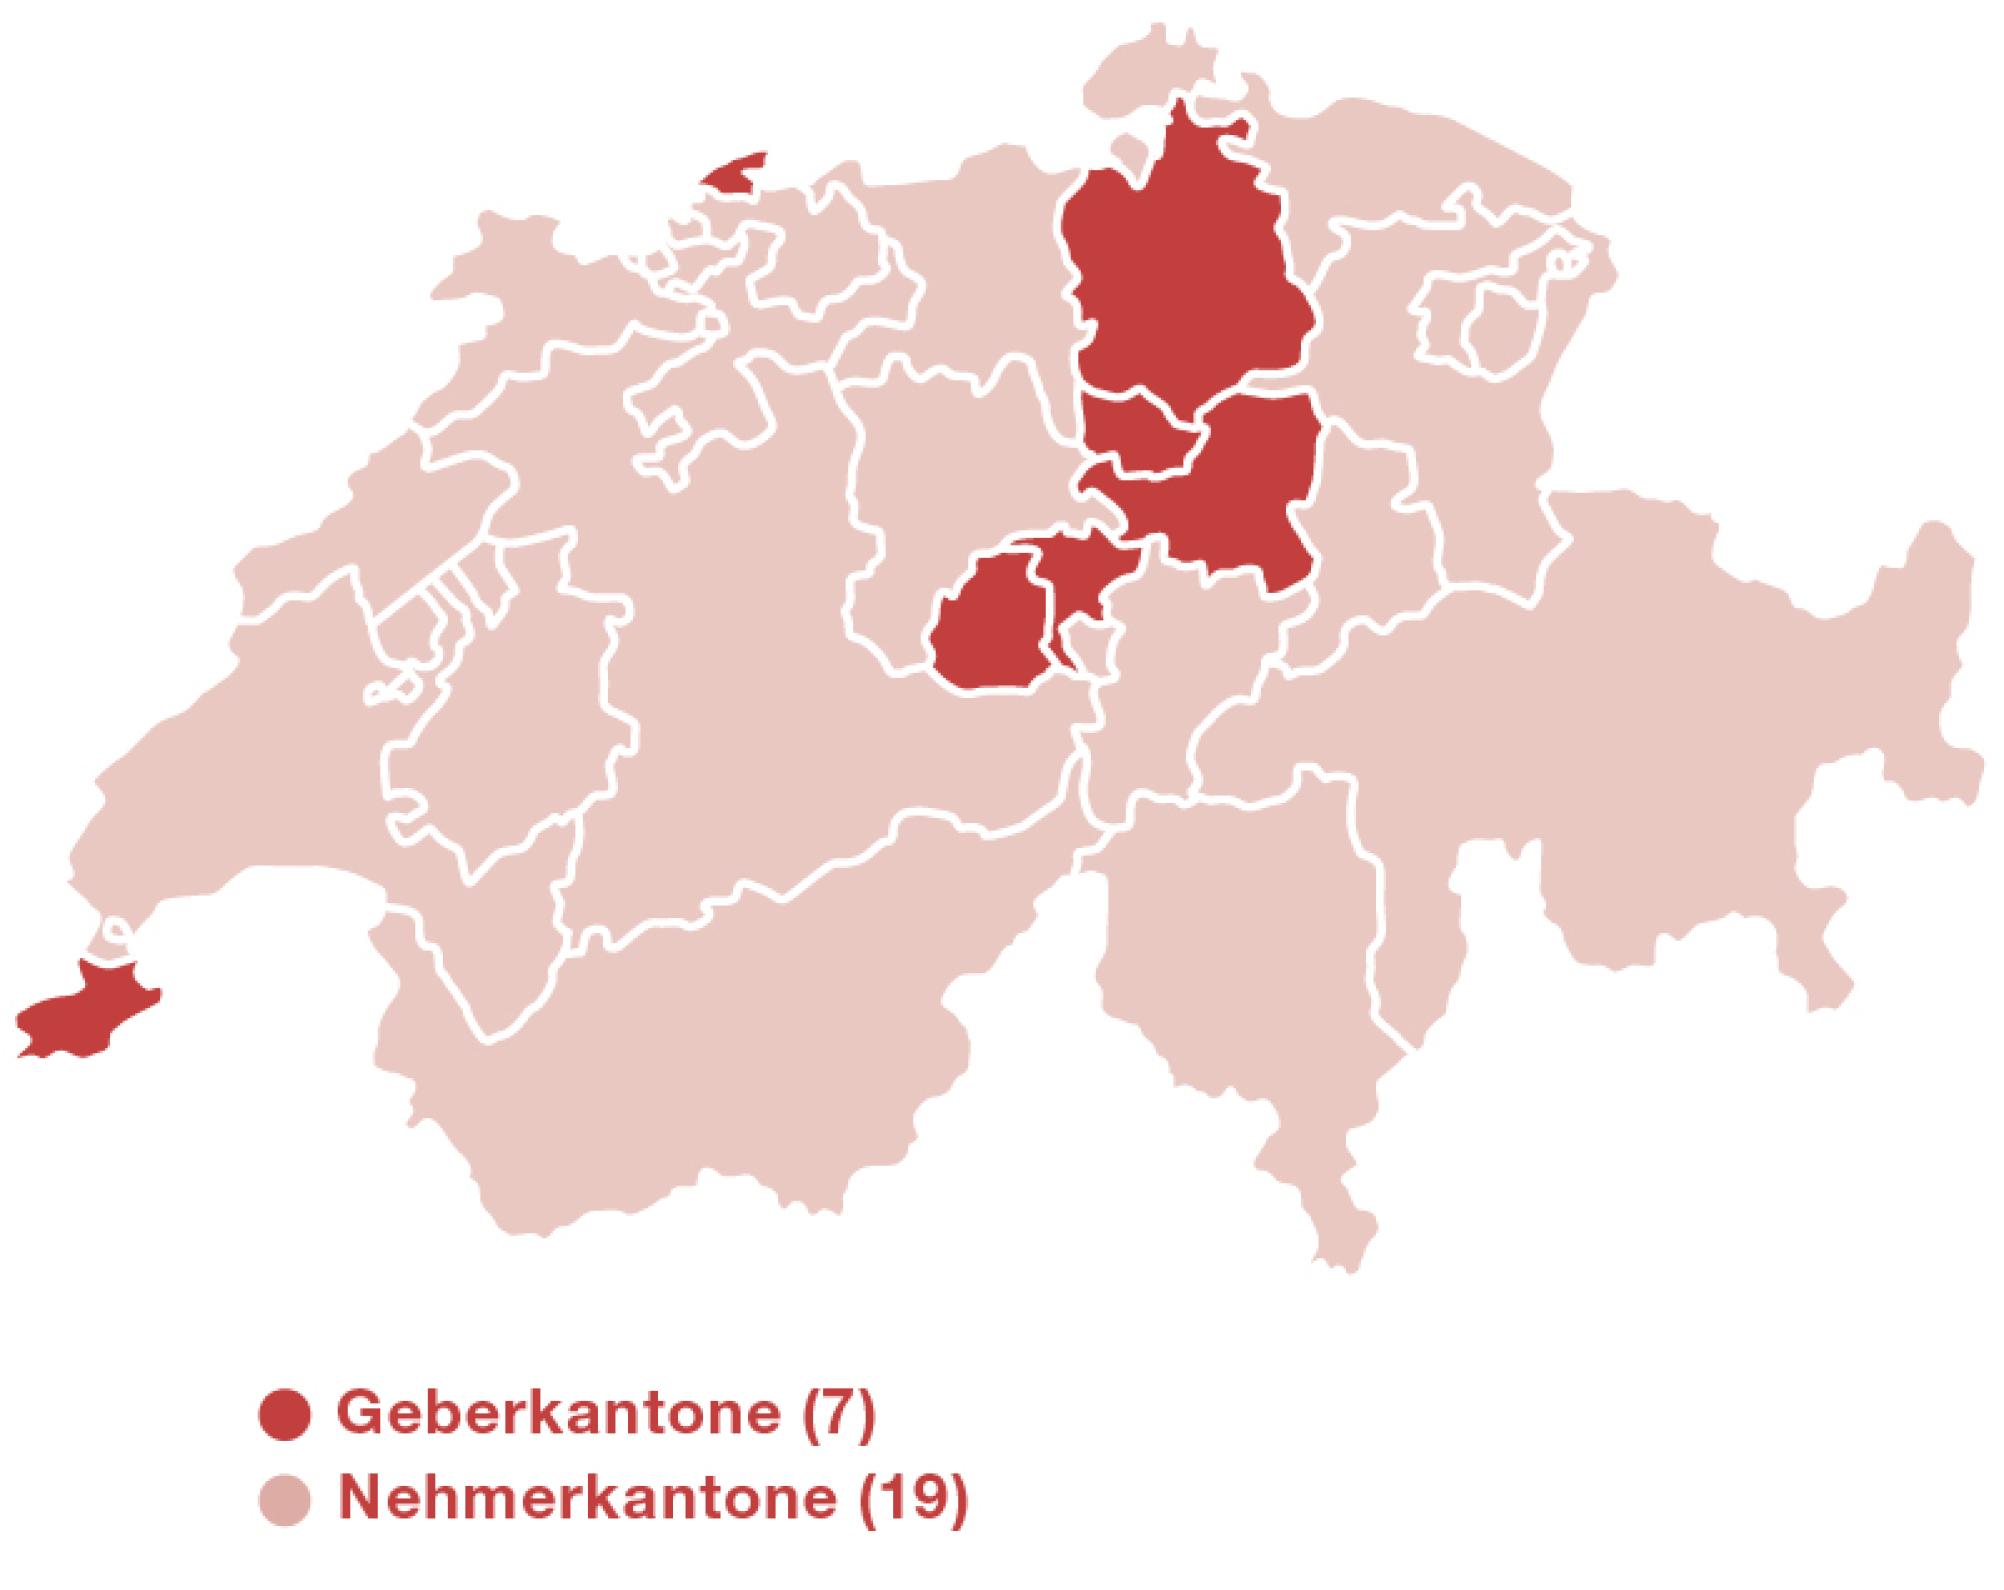 Karte der Schweiz mit Umriss der Kantone. Die Geberkantone sind dunkel markiert. Es handelt sich um Zug, Schwyz, Nidwalden, Genf, Basel-Stadt, Zürich und Obwalden.